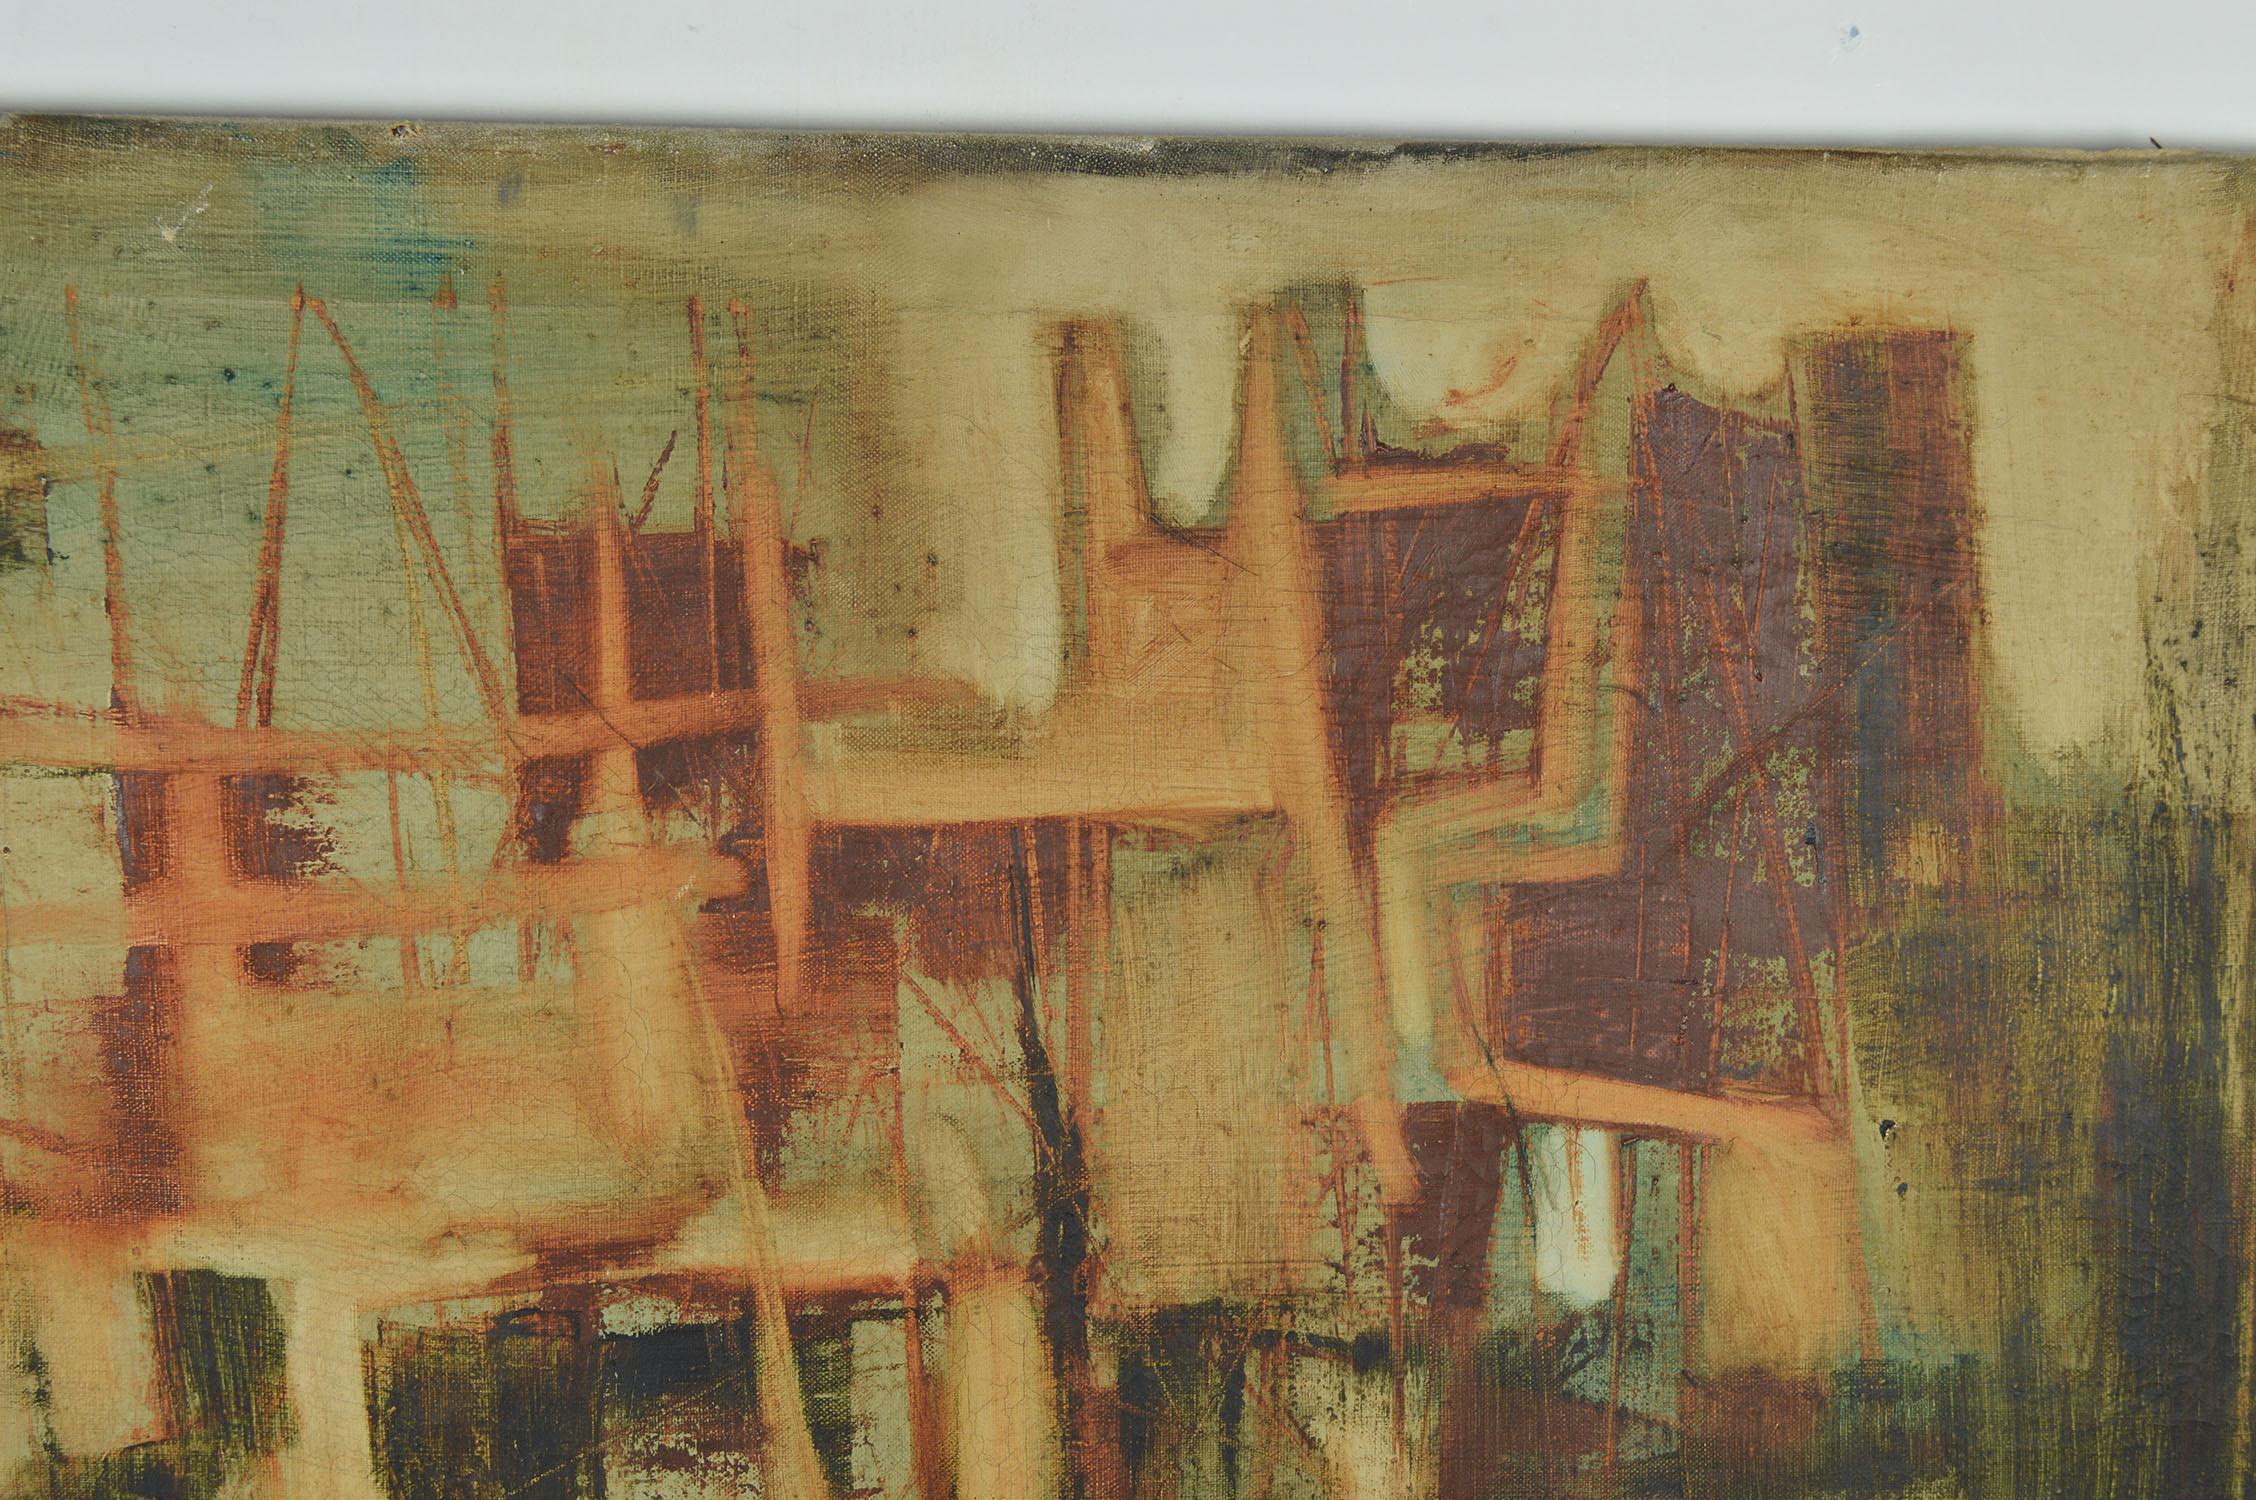 Abstraktes Ölgemälde auf Leinwand mit einer venezianischen Stadtlandschaft.

Ungerahmt. Keine Unterschrift.

Es wird Sadanand k. zugeschrieben. Bakre.

In gedeckten Farben im Einklang mit seinem frühen Werk in Europa.

Sadanand K. Bakre,